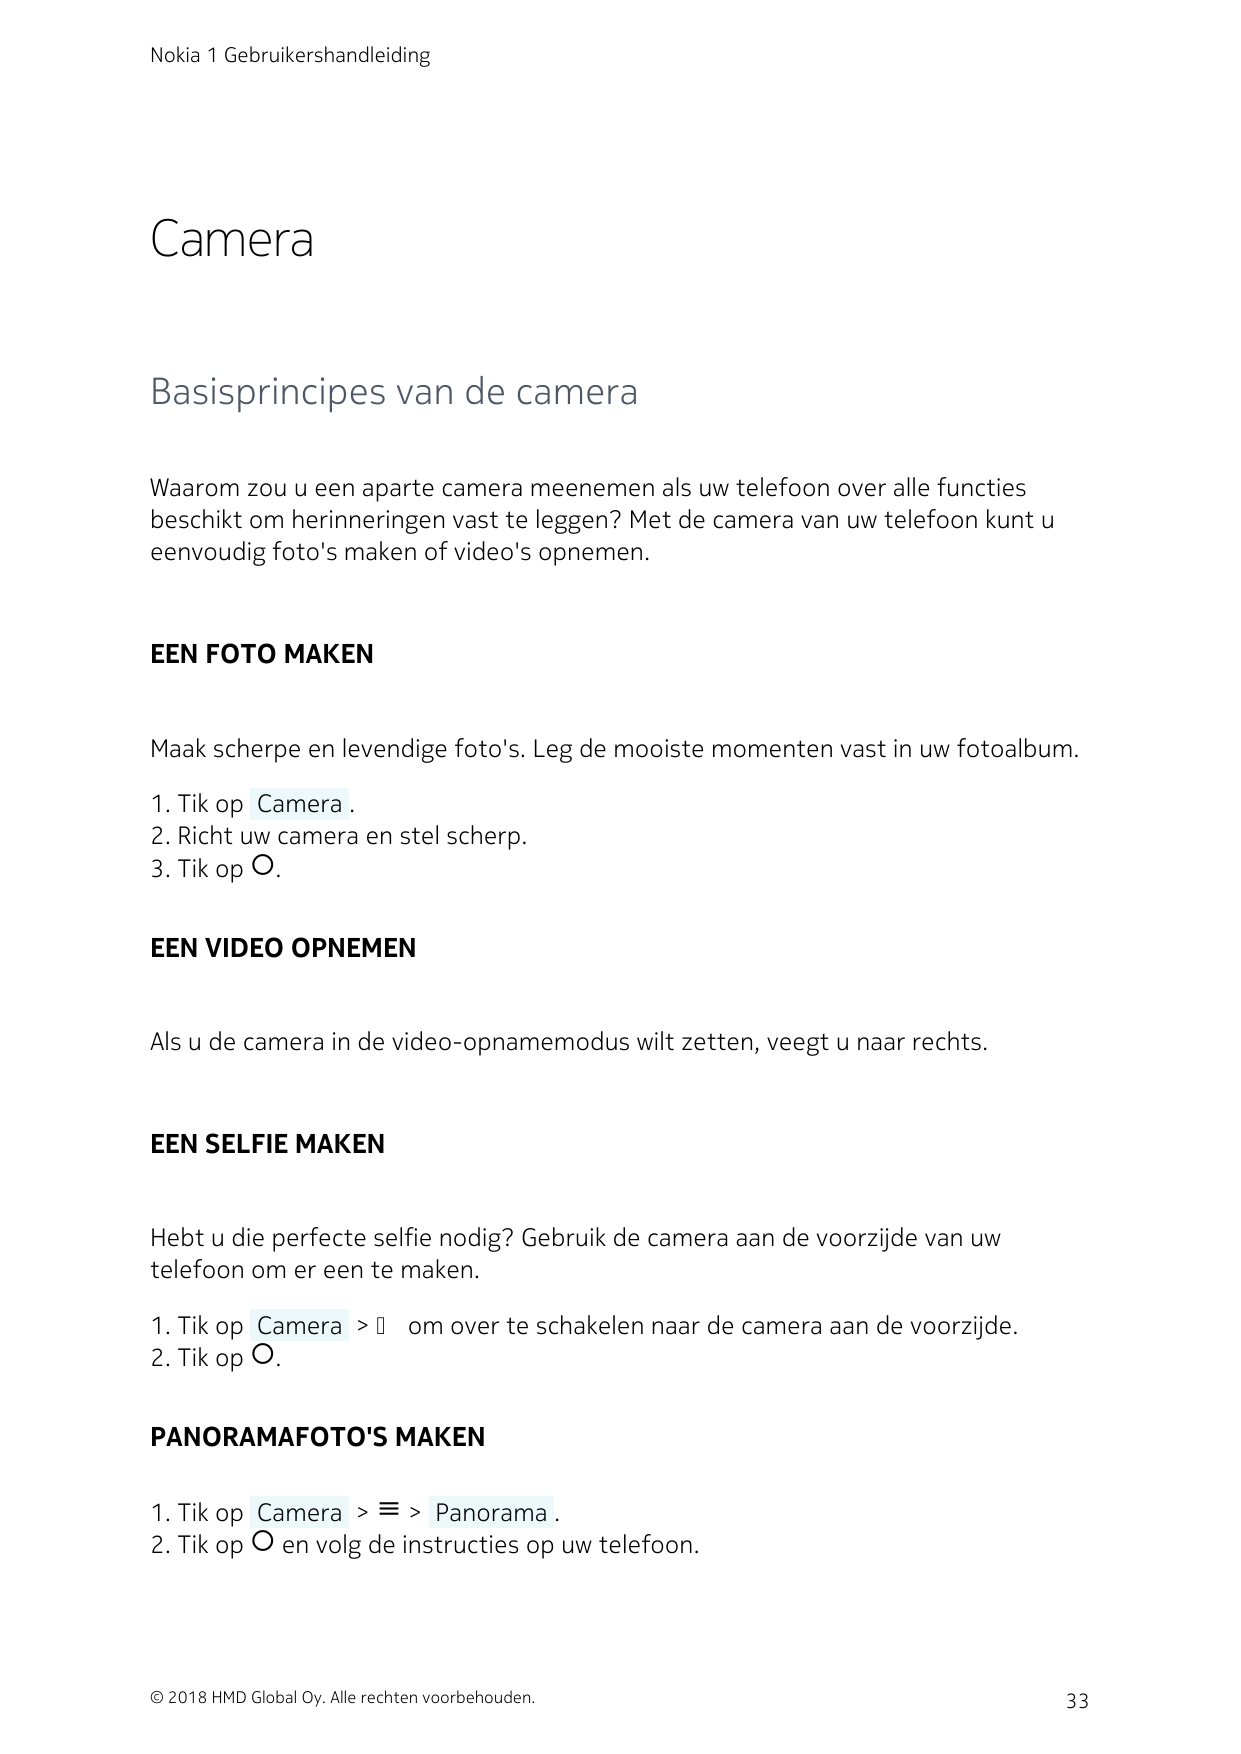 Nokia 1 GebruikershandleidingCameraBasisprincipes van de cameraWaarom zou u een aparte camera meenemen als uw telefoon over alle